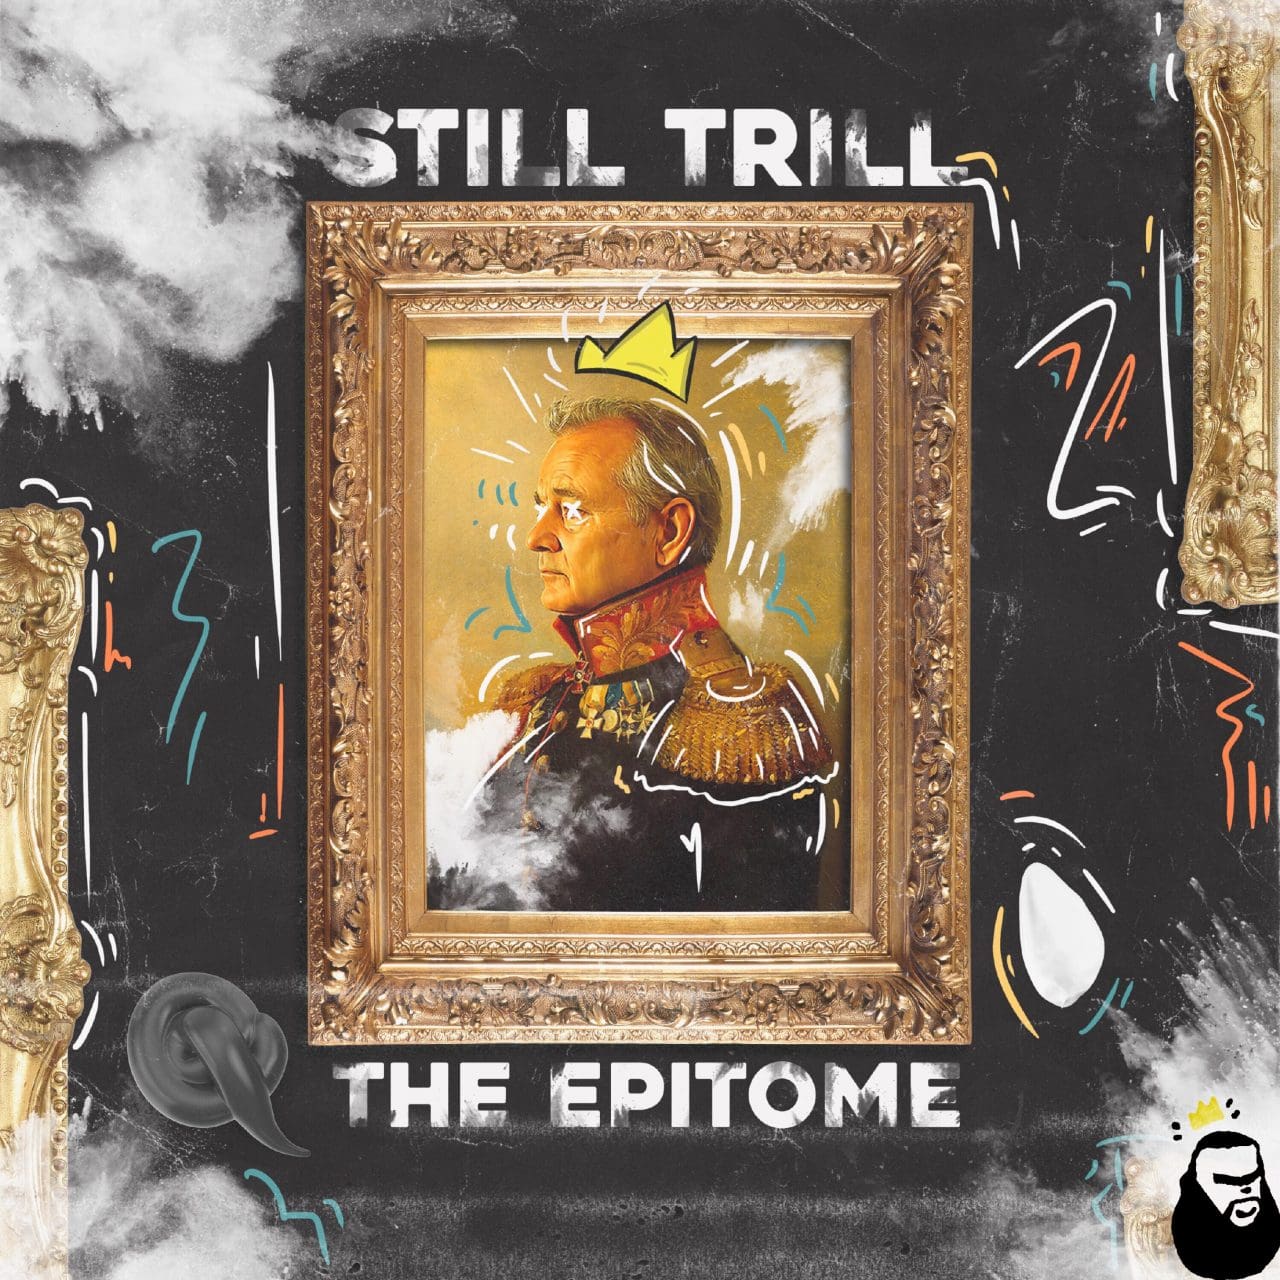 The Epitome - Still Trill